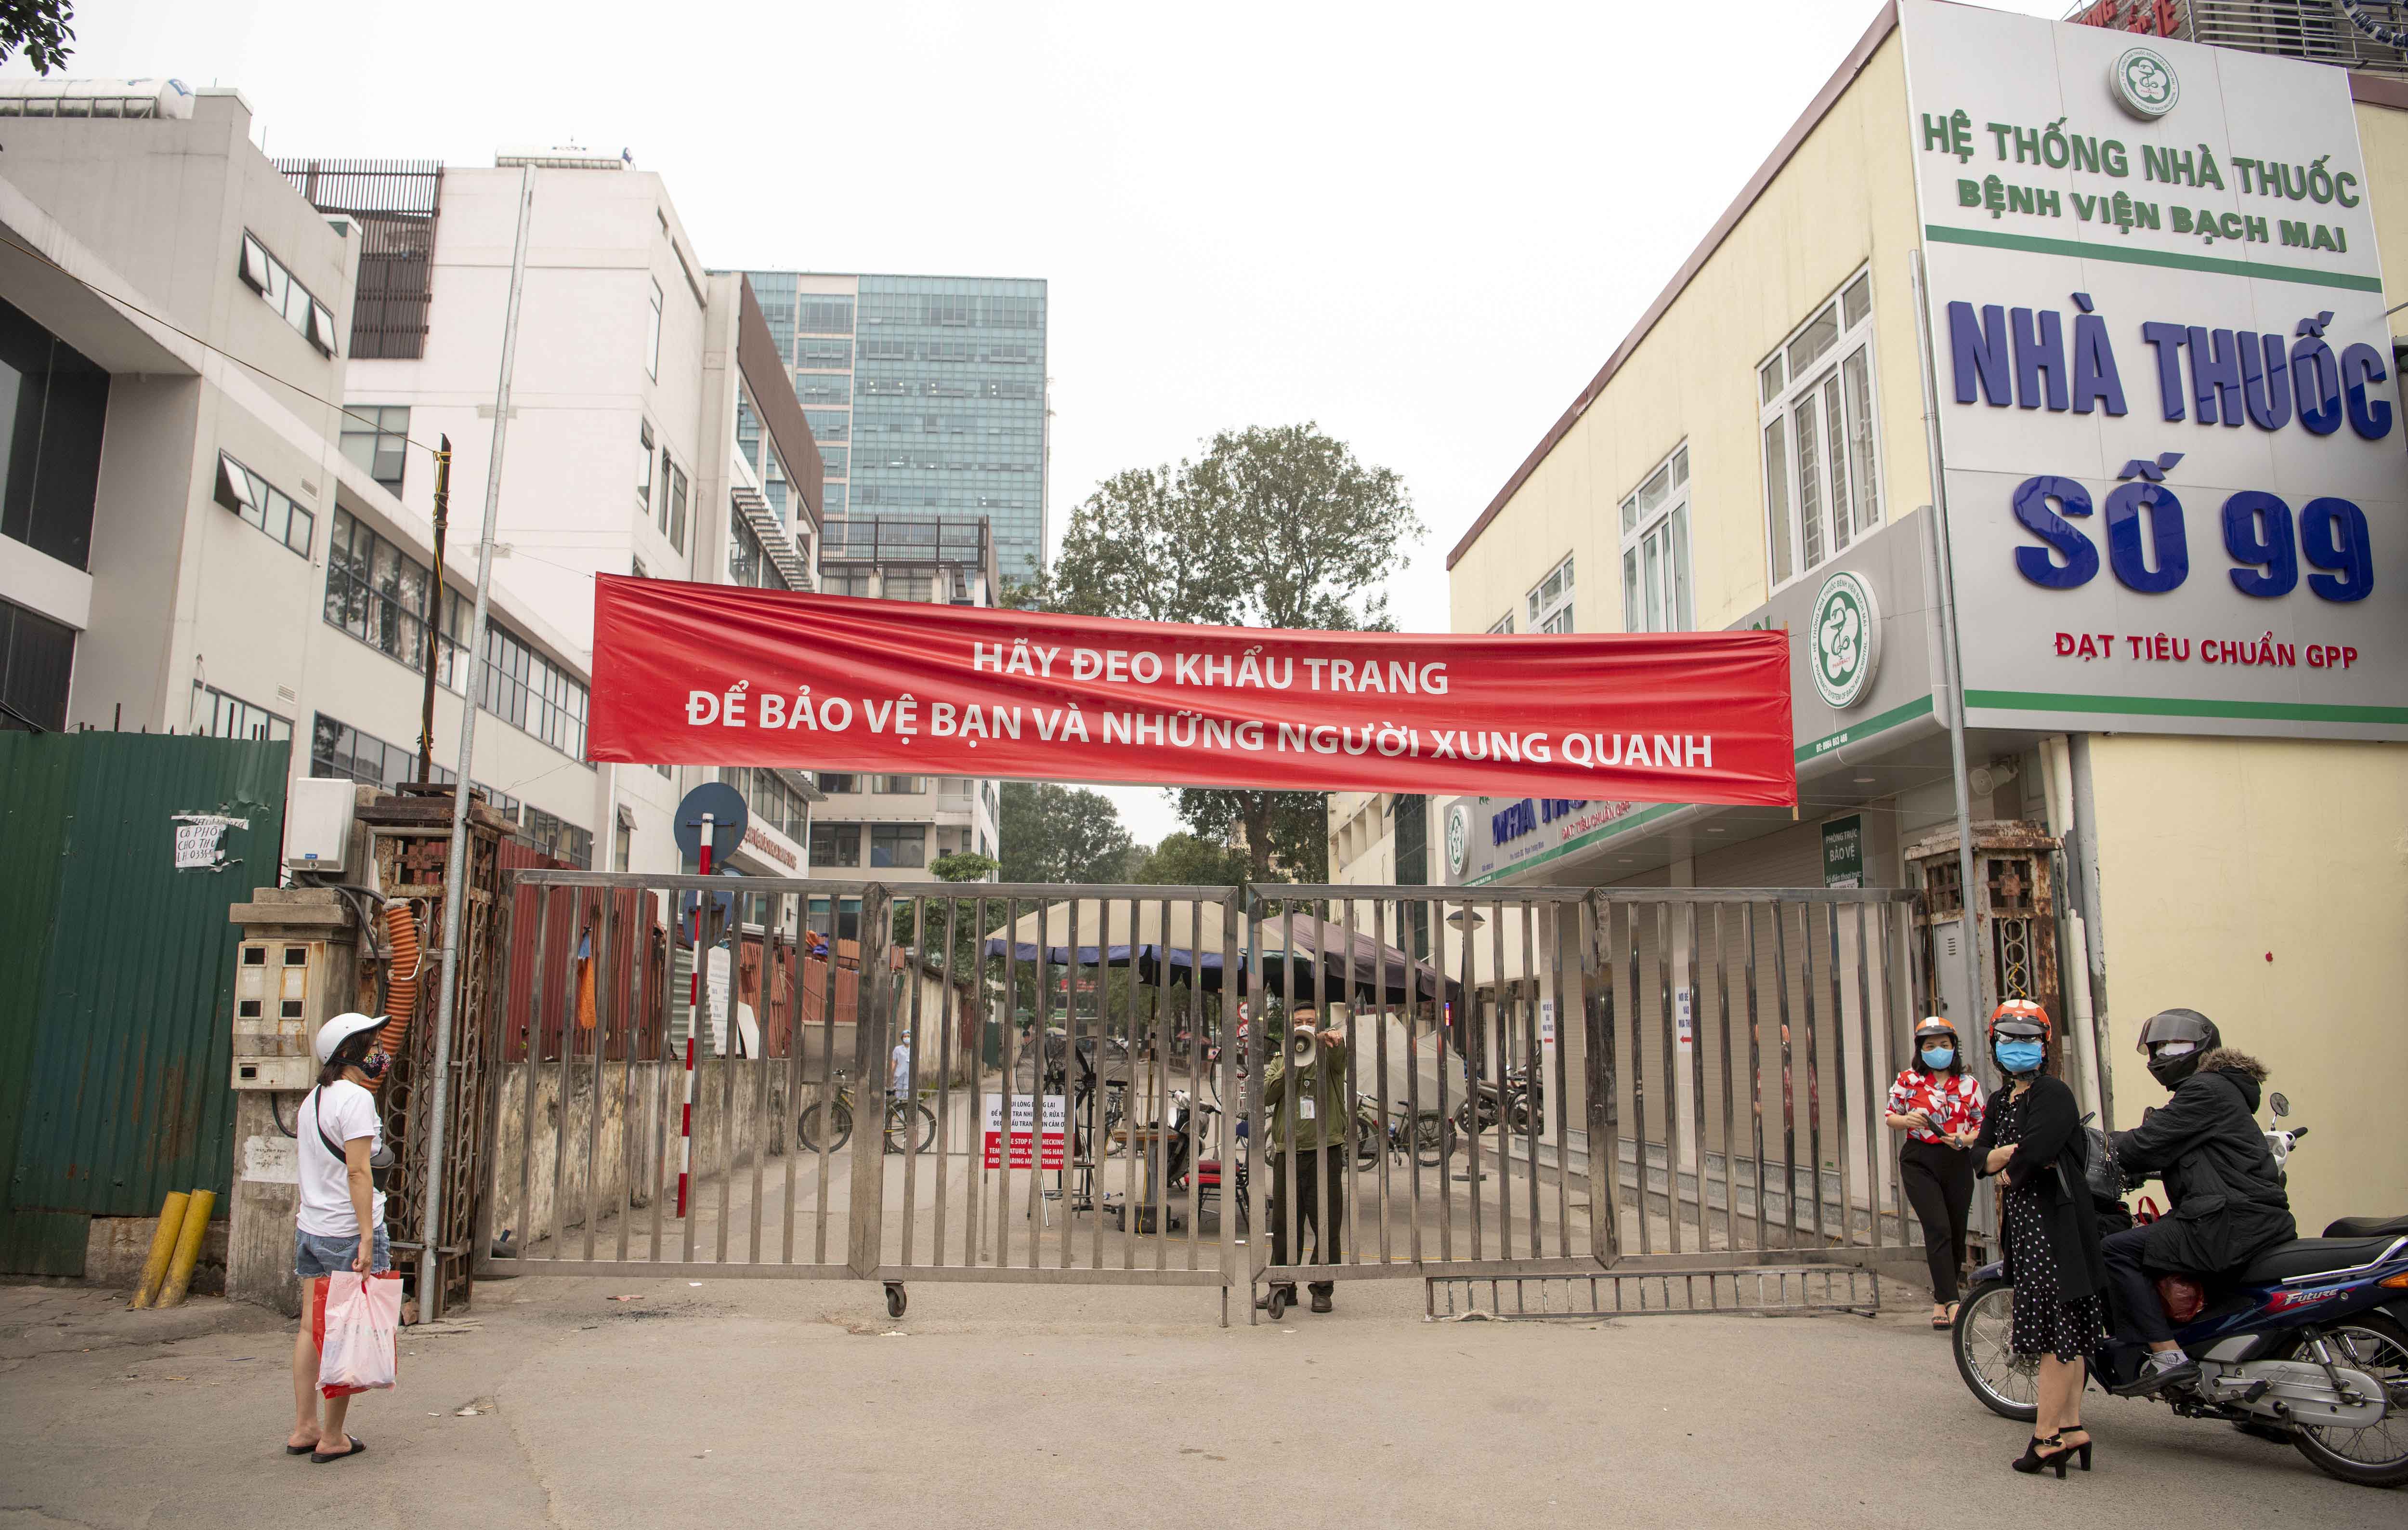 Cổng sau của Bệnh viện Bạch Mai được khoá kín sau khi có những ca nhiễm Covid-19 liên quan đến bệnh viện.